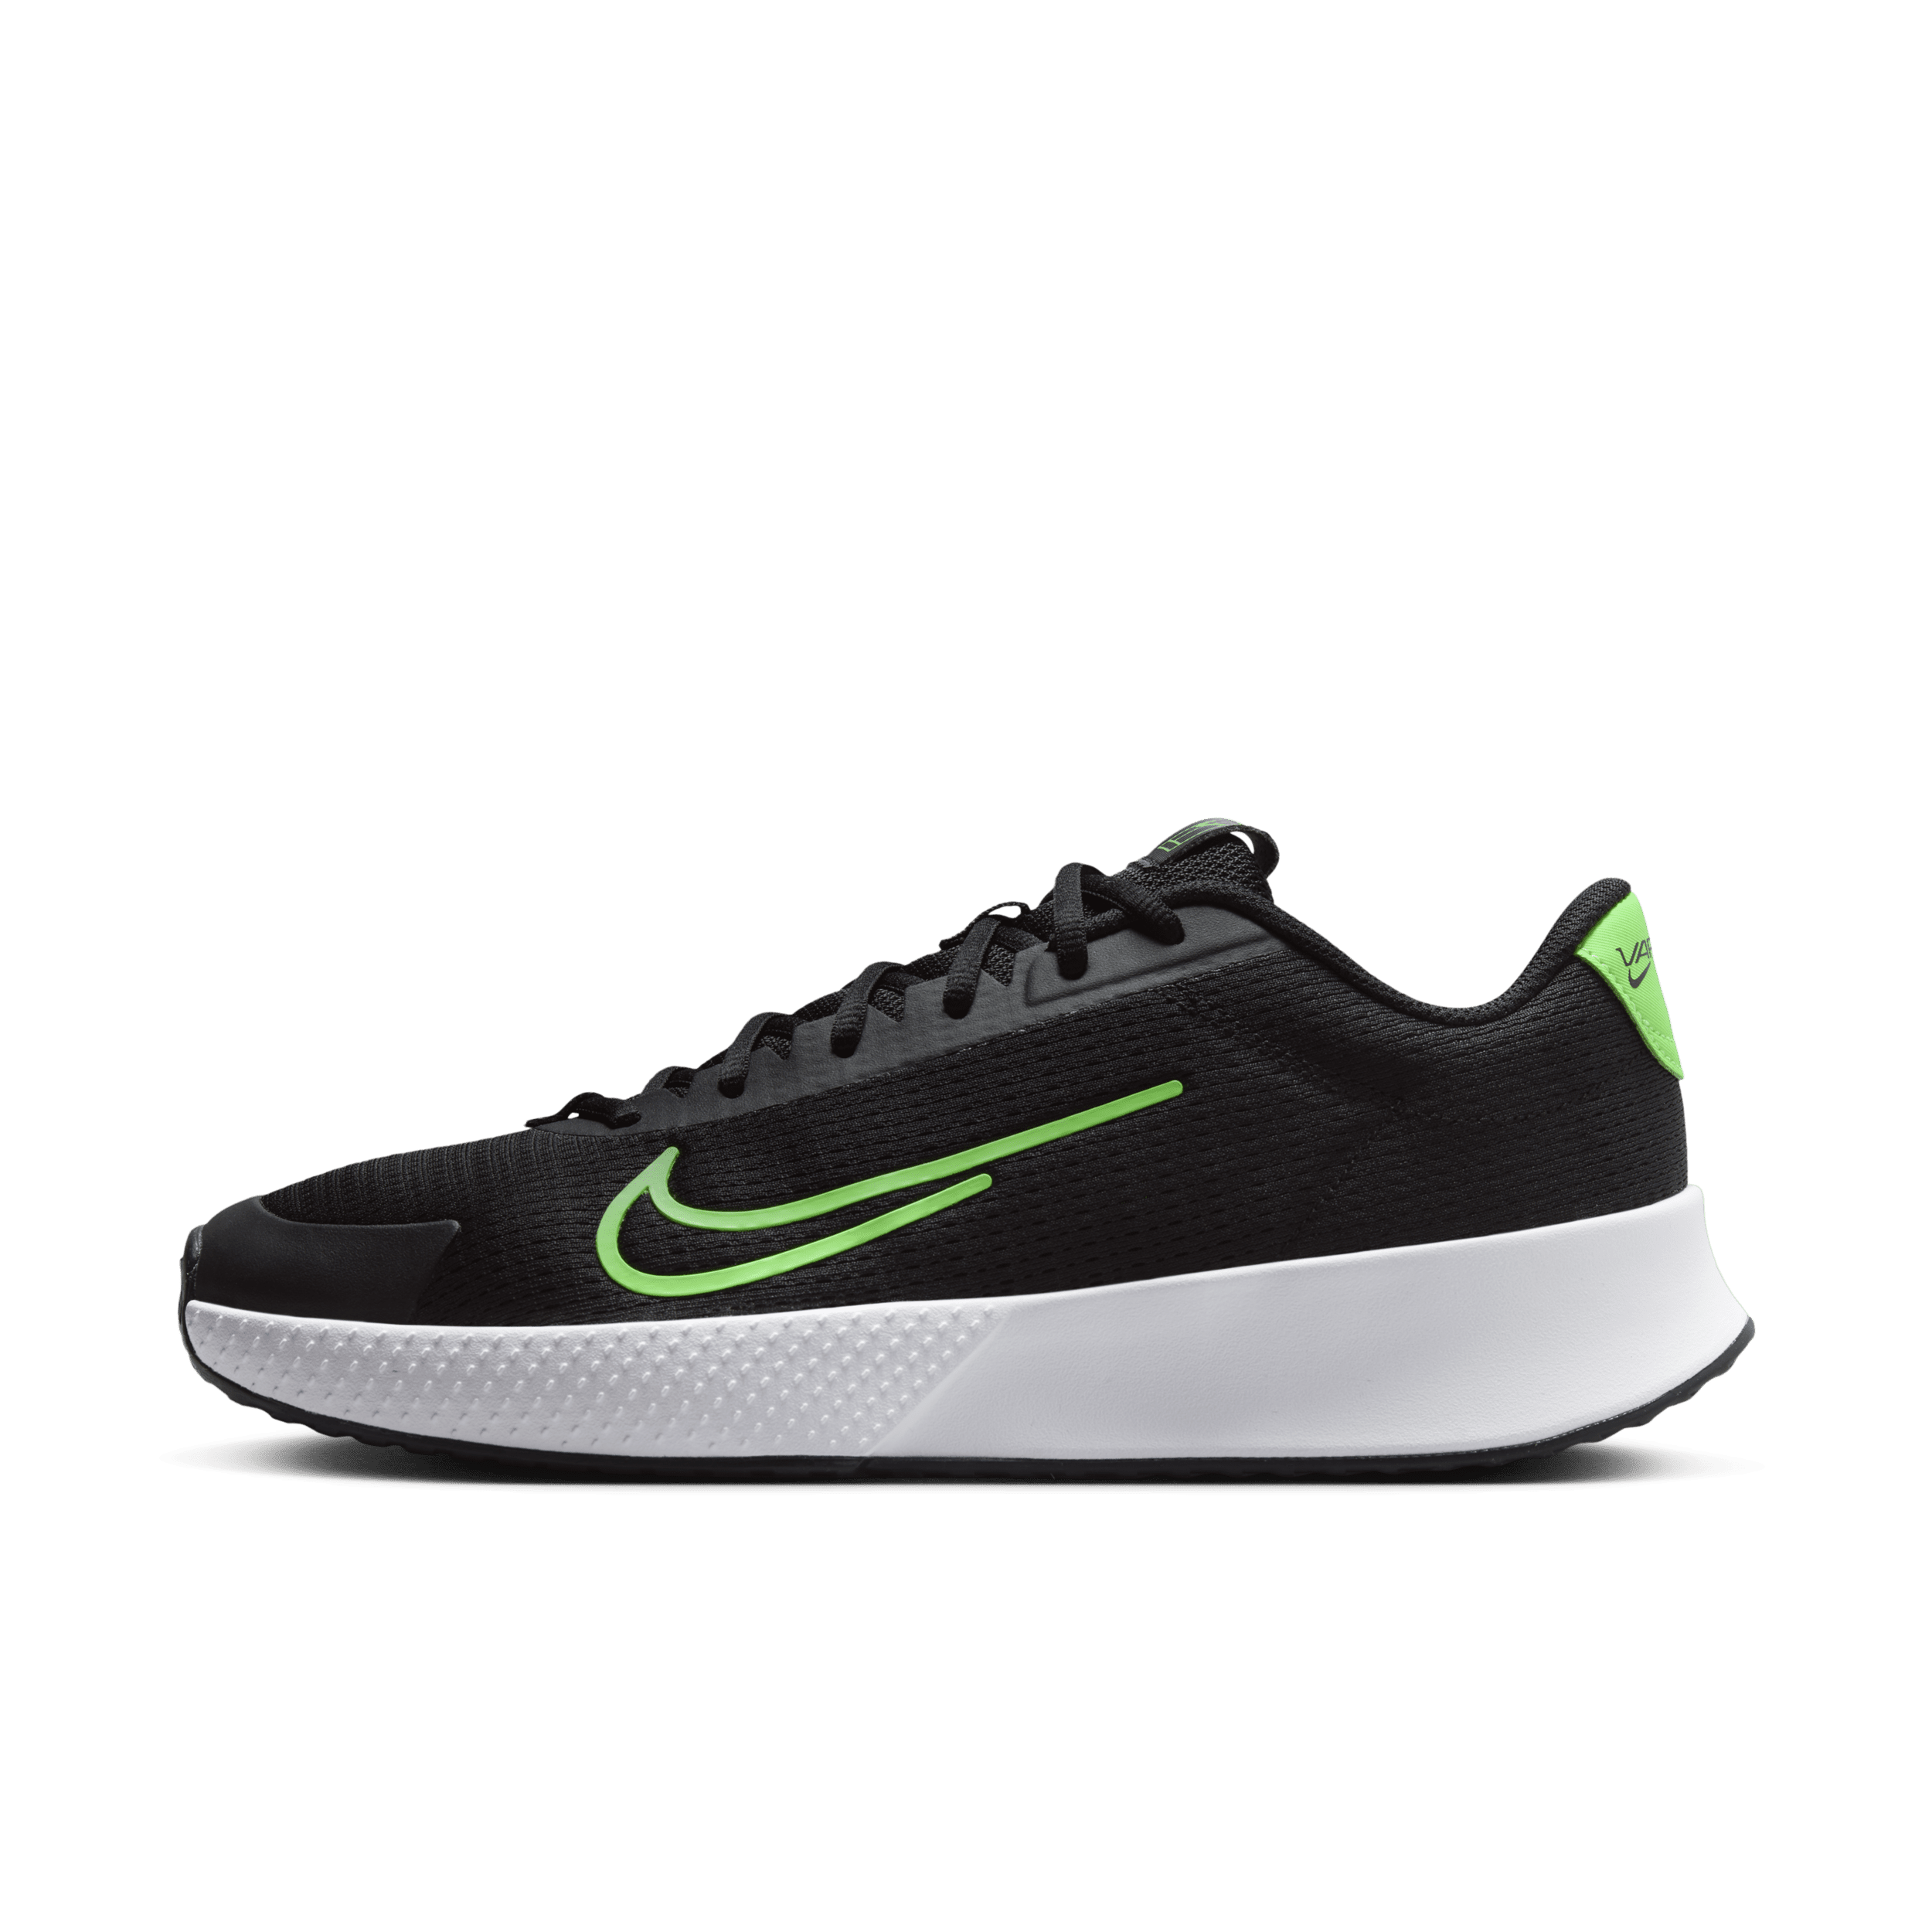 NikeCourt Vapor Lite 2 Hardcourt tennisschoenen voor heren - Zwart